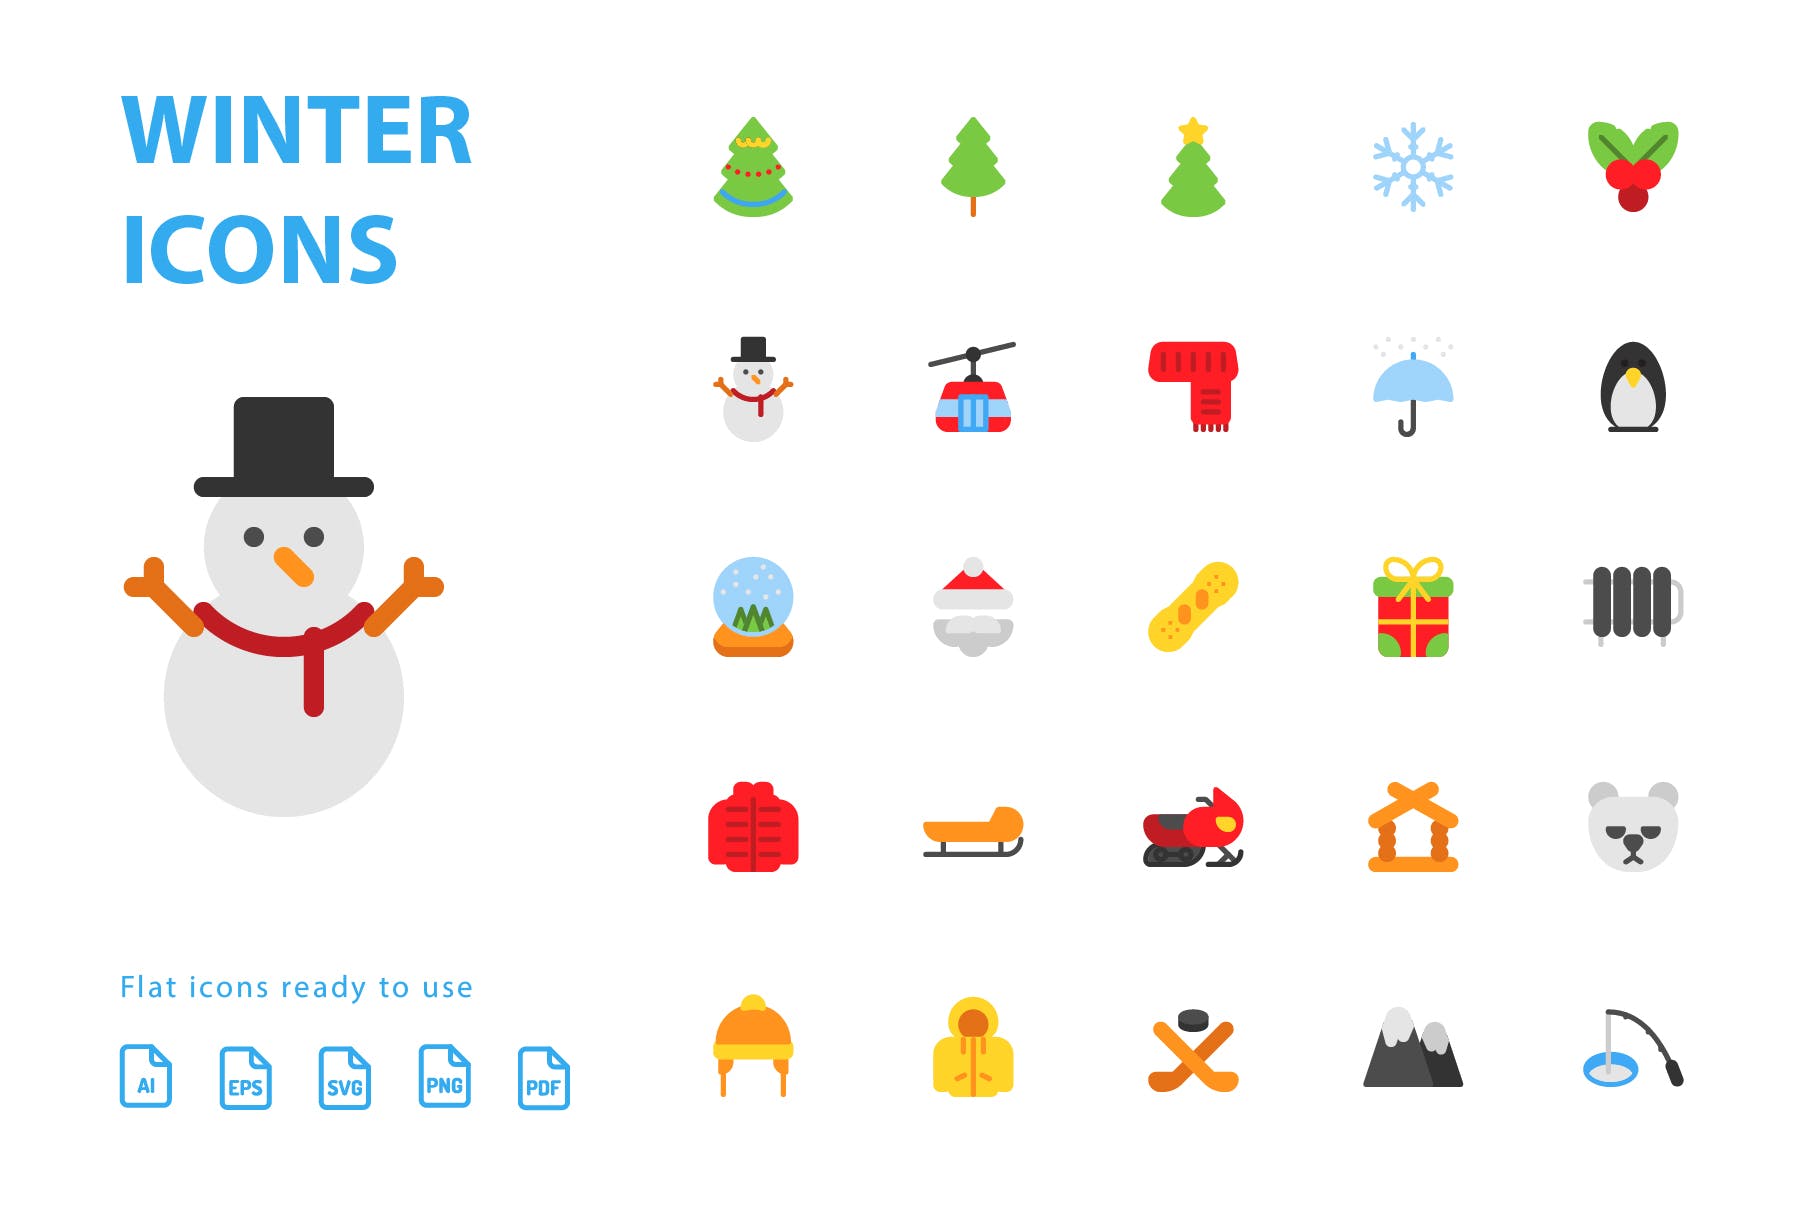 25枚冬天主题扁平设计风格矢量蚂蚁素材精选图标v1 Winter Flat Icons插图(2)